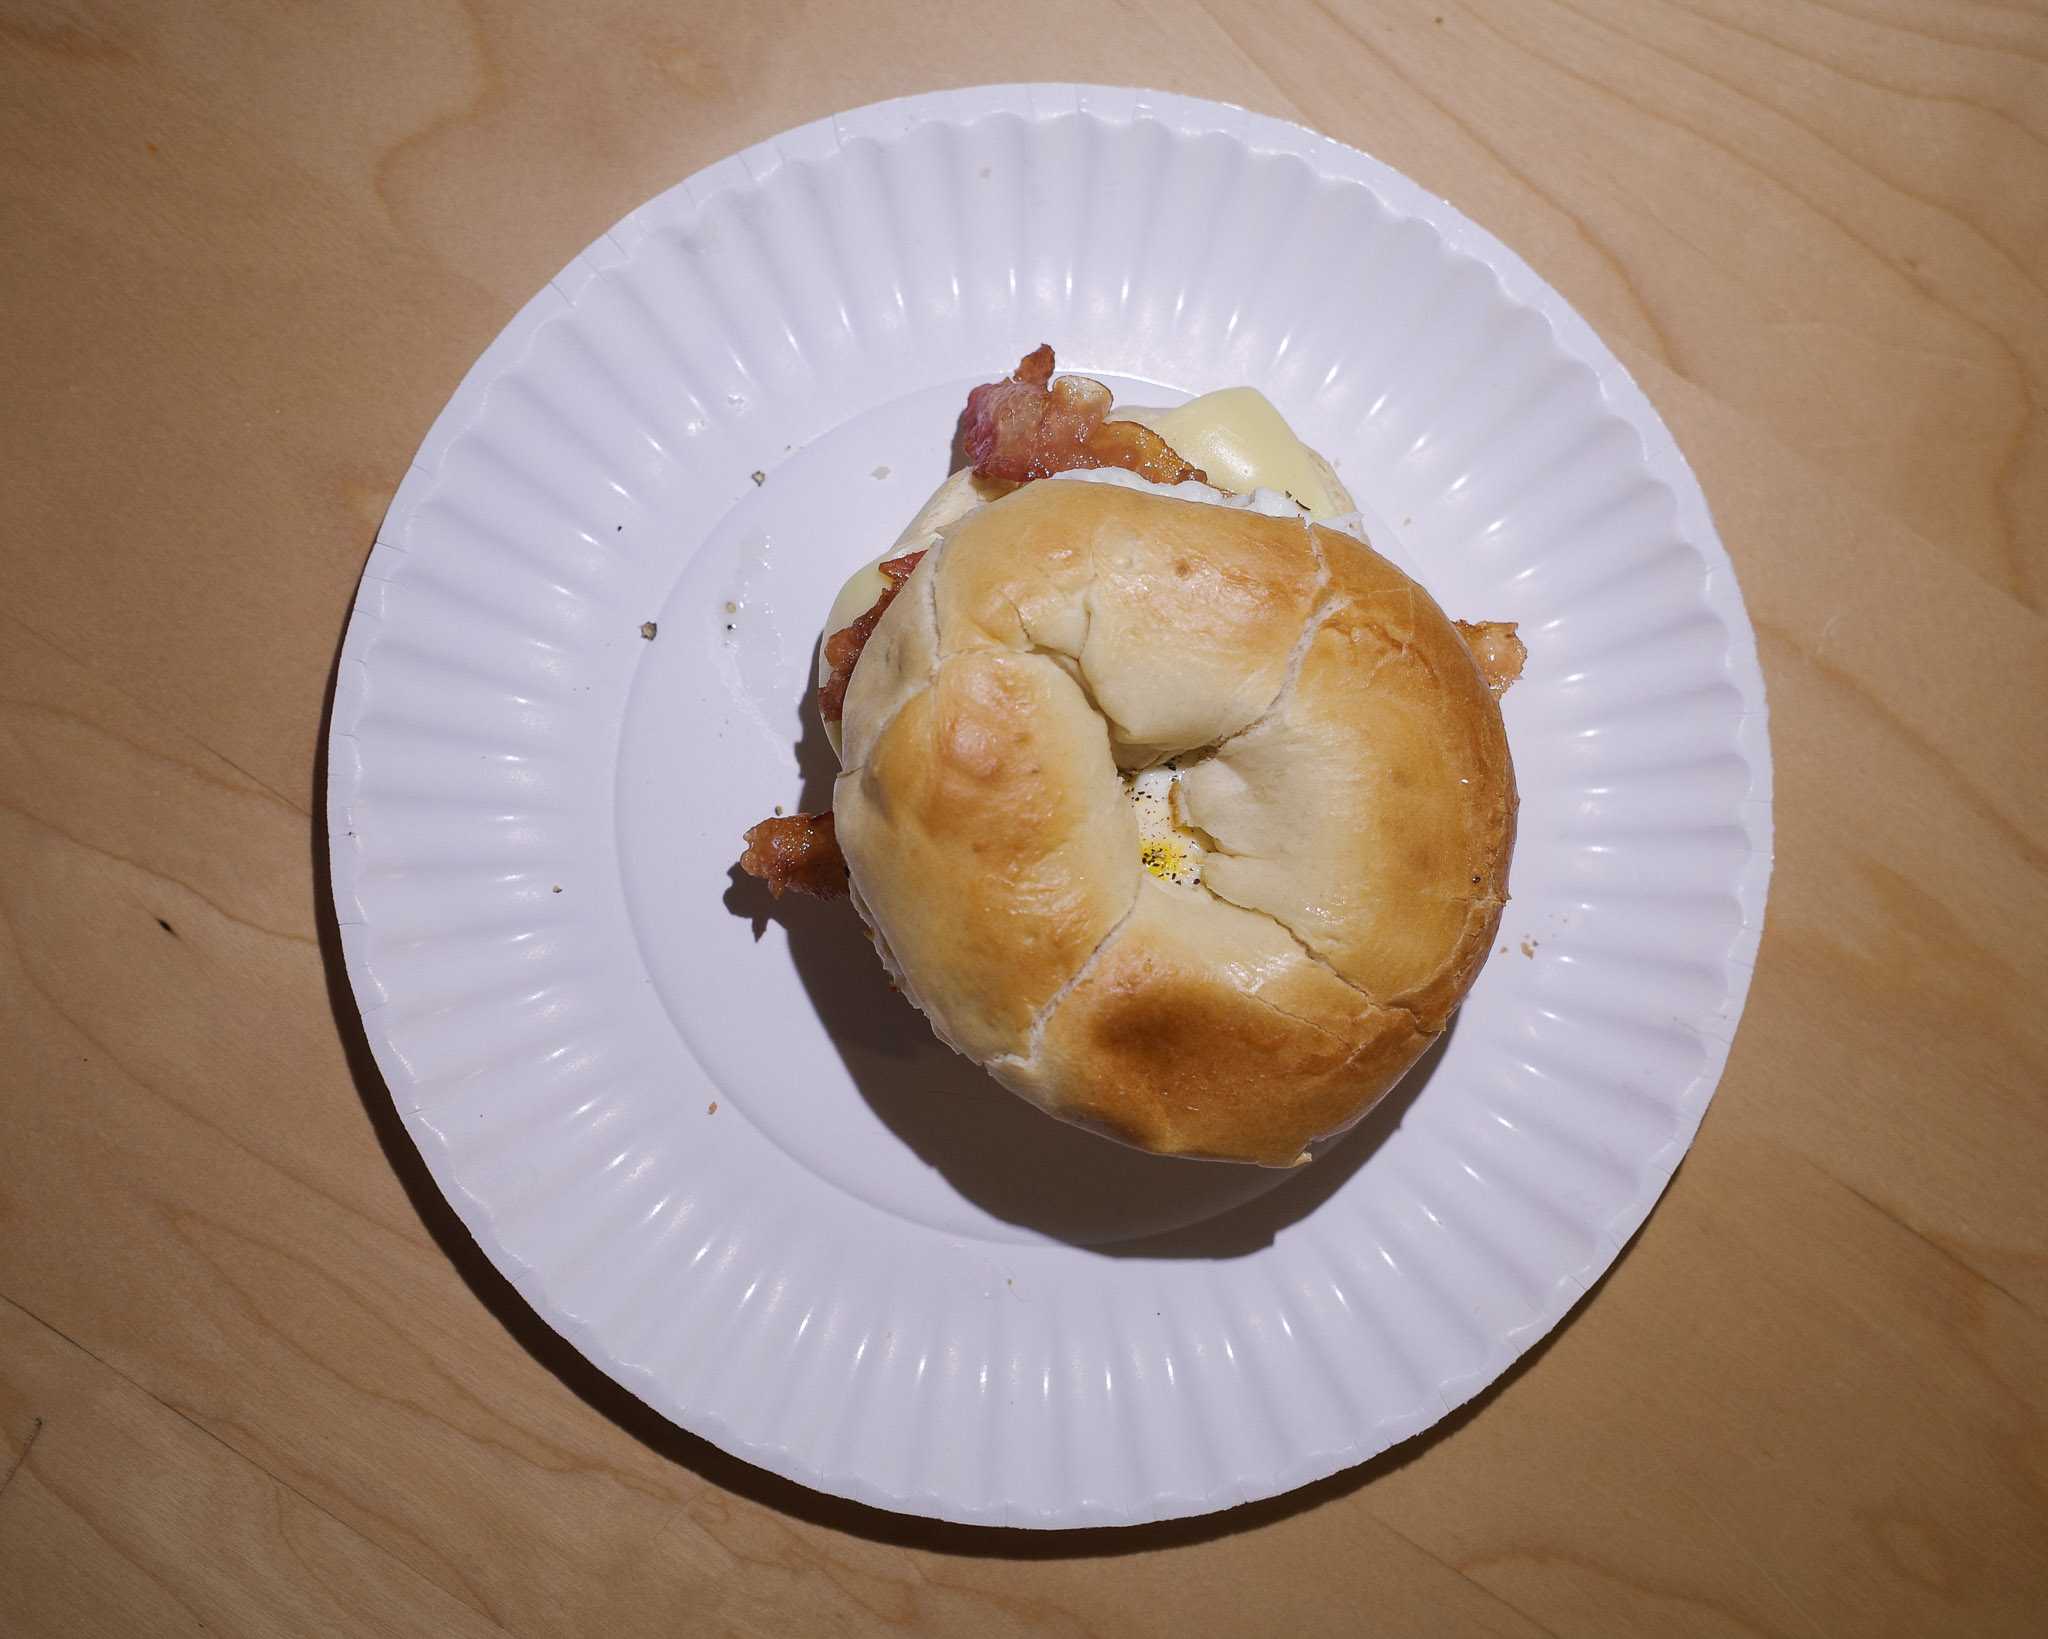 Figure 1: My usual bagel sandwich for breakfast